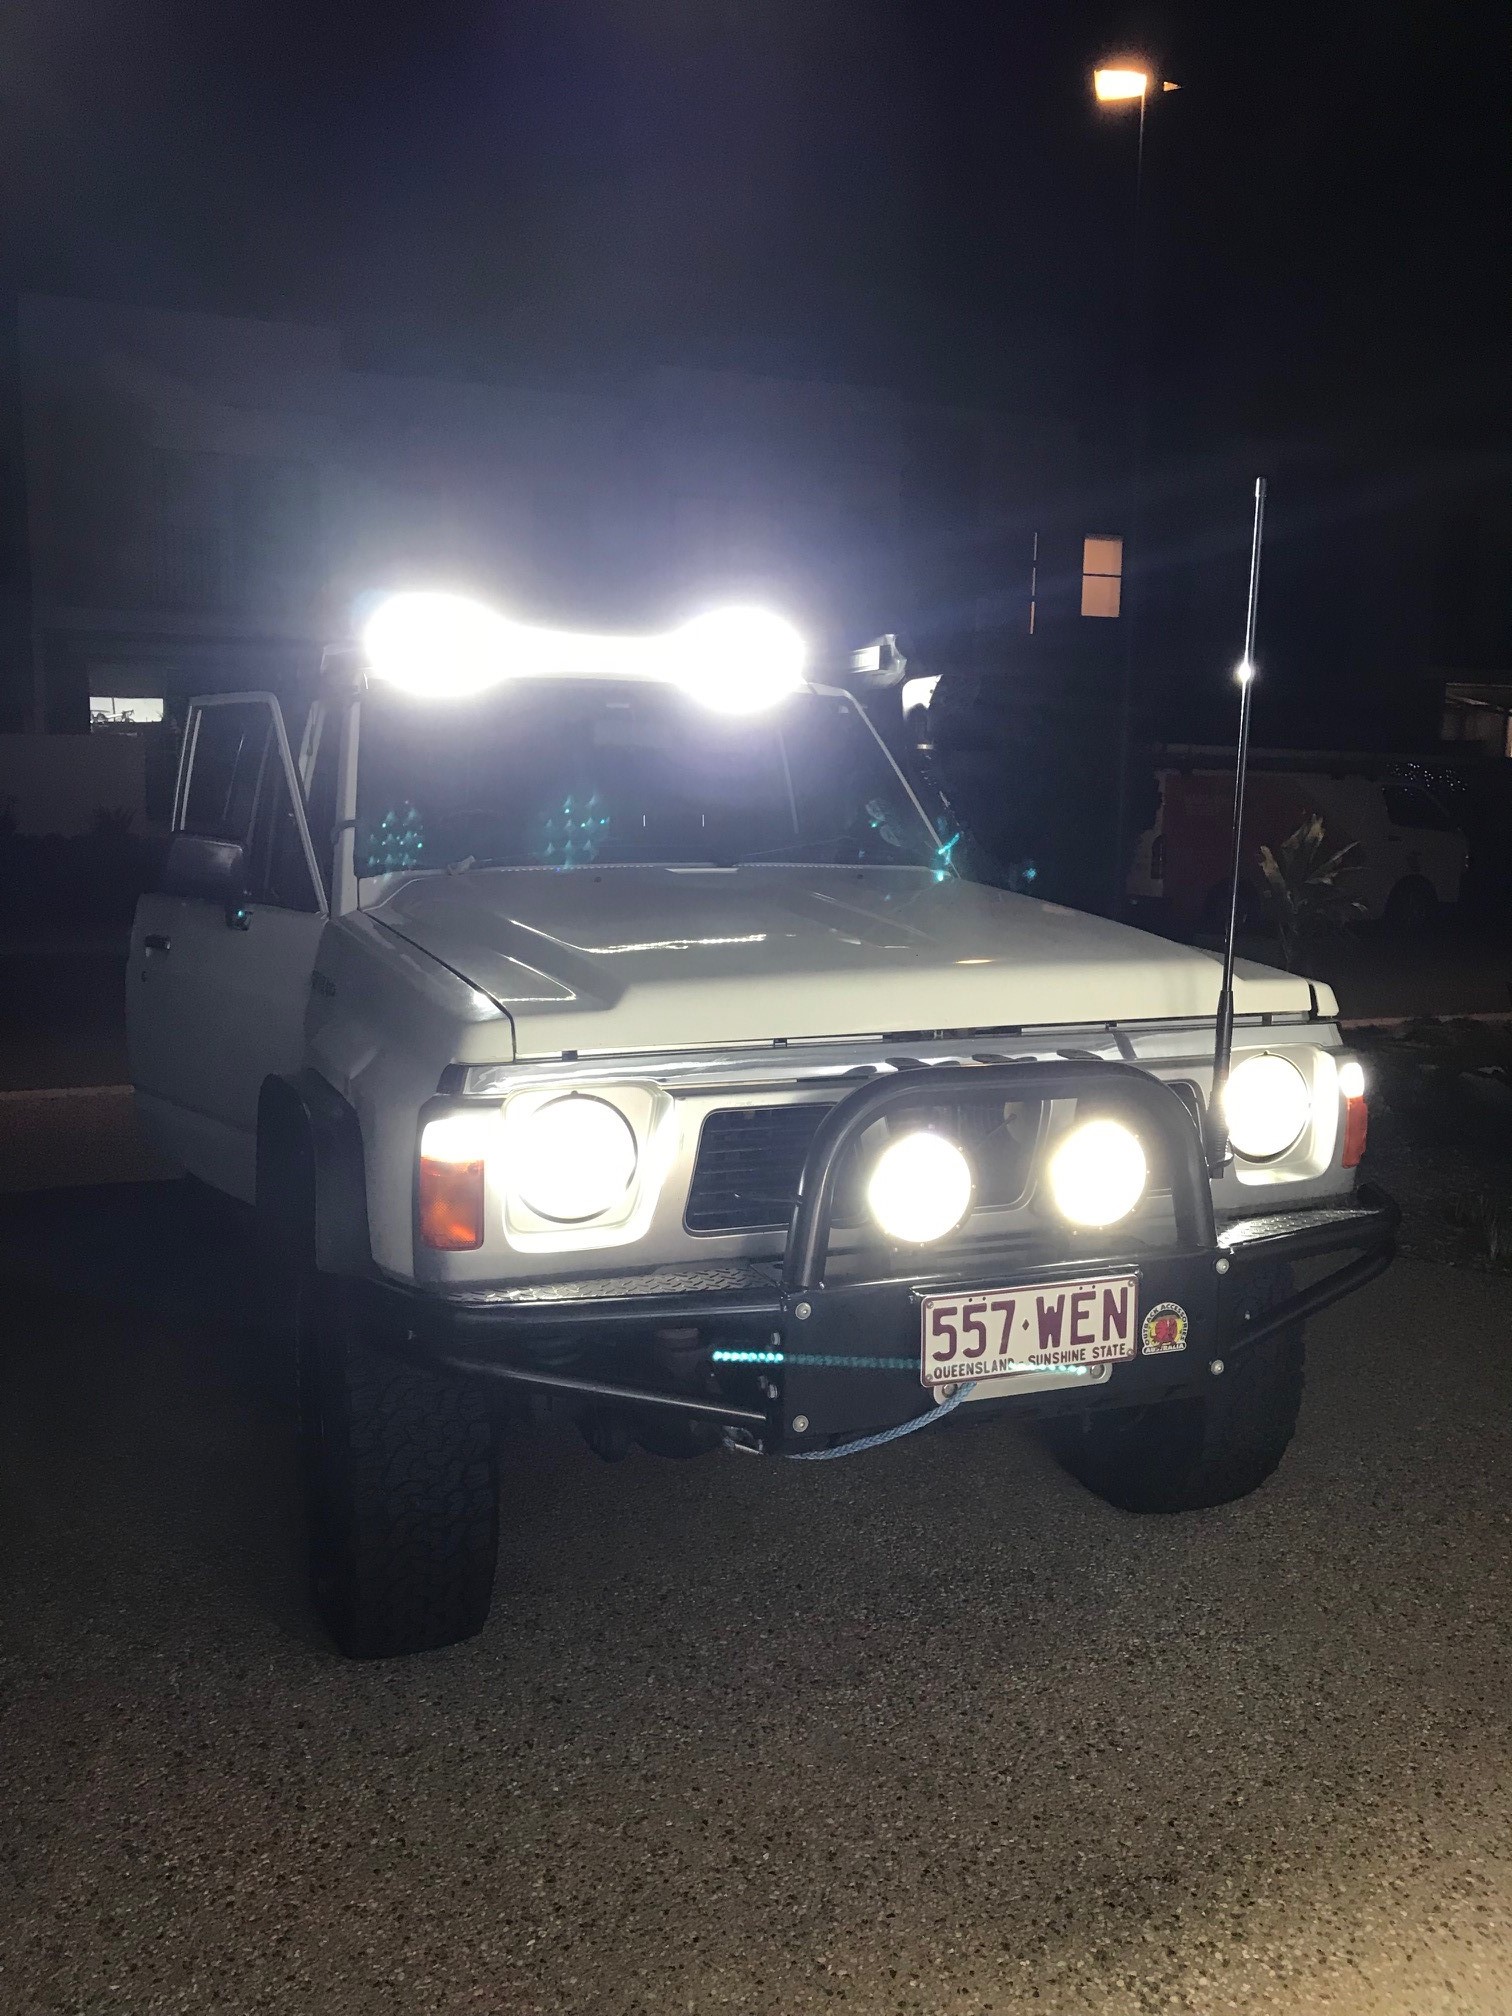 1992 Nissan Patrol